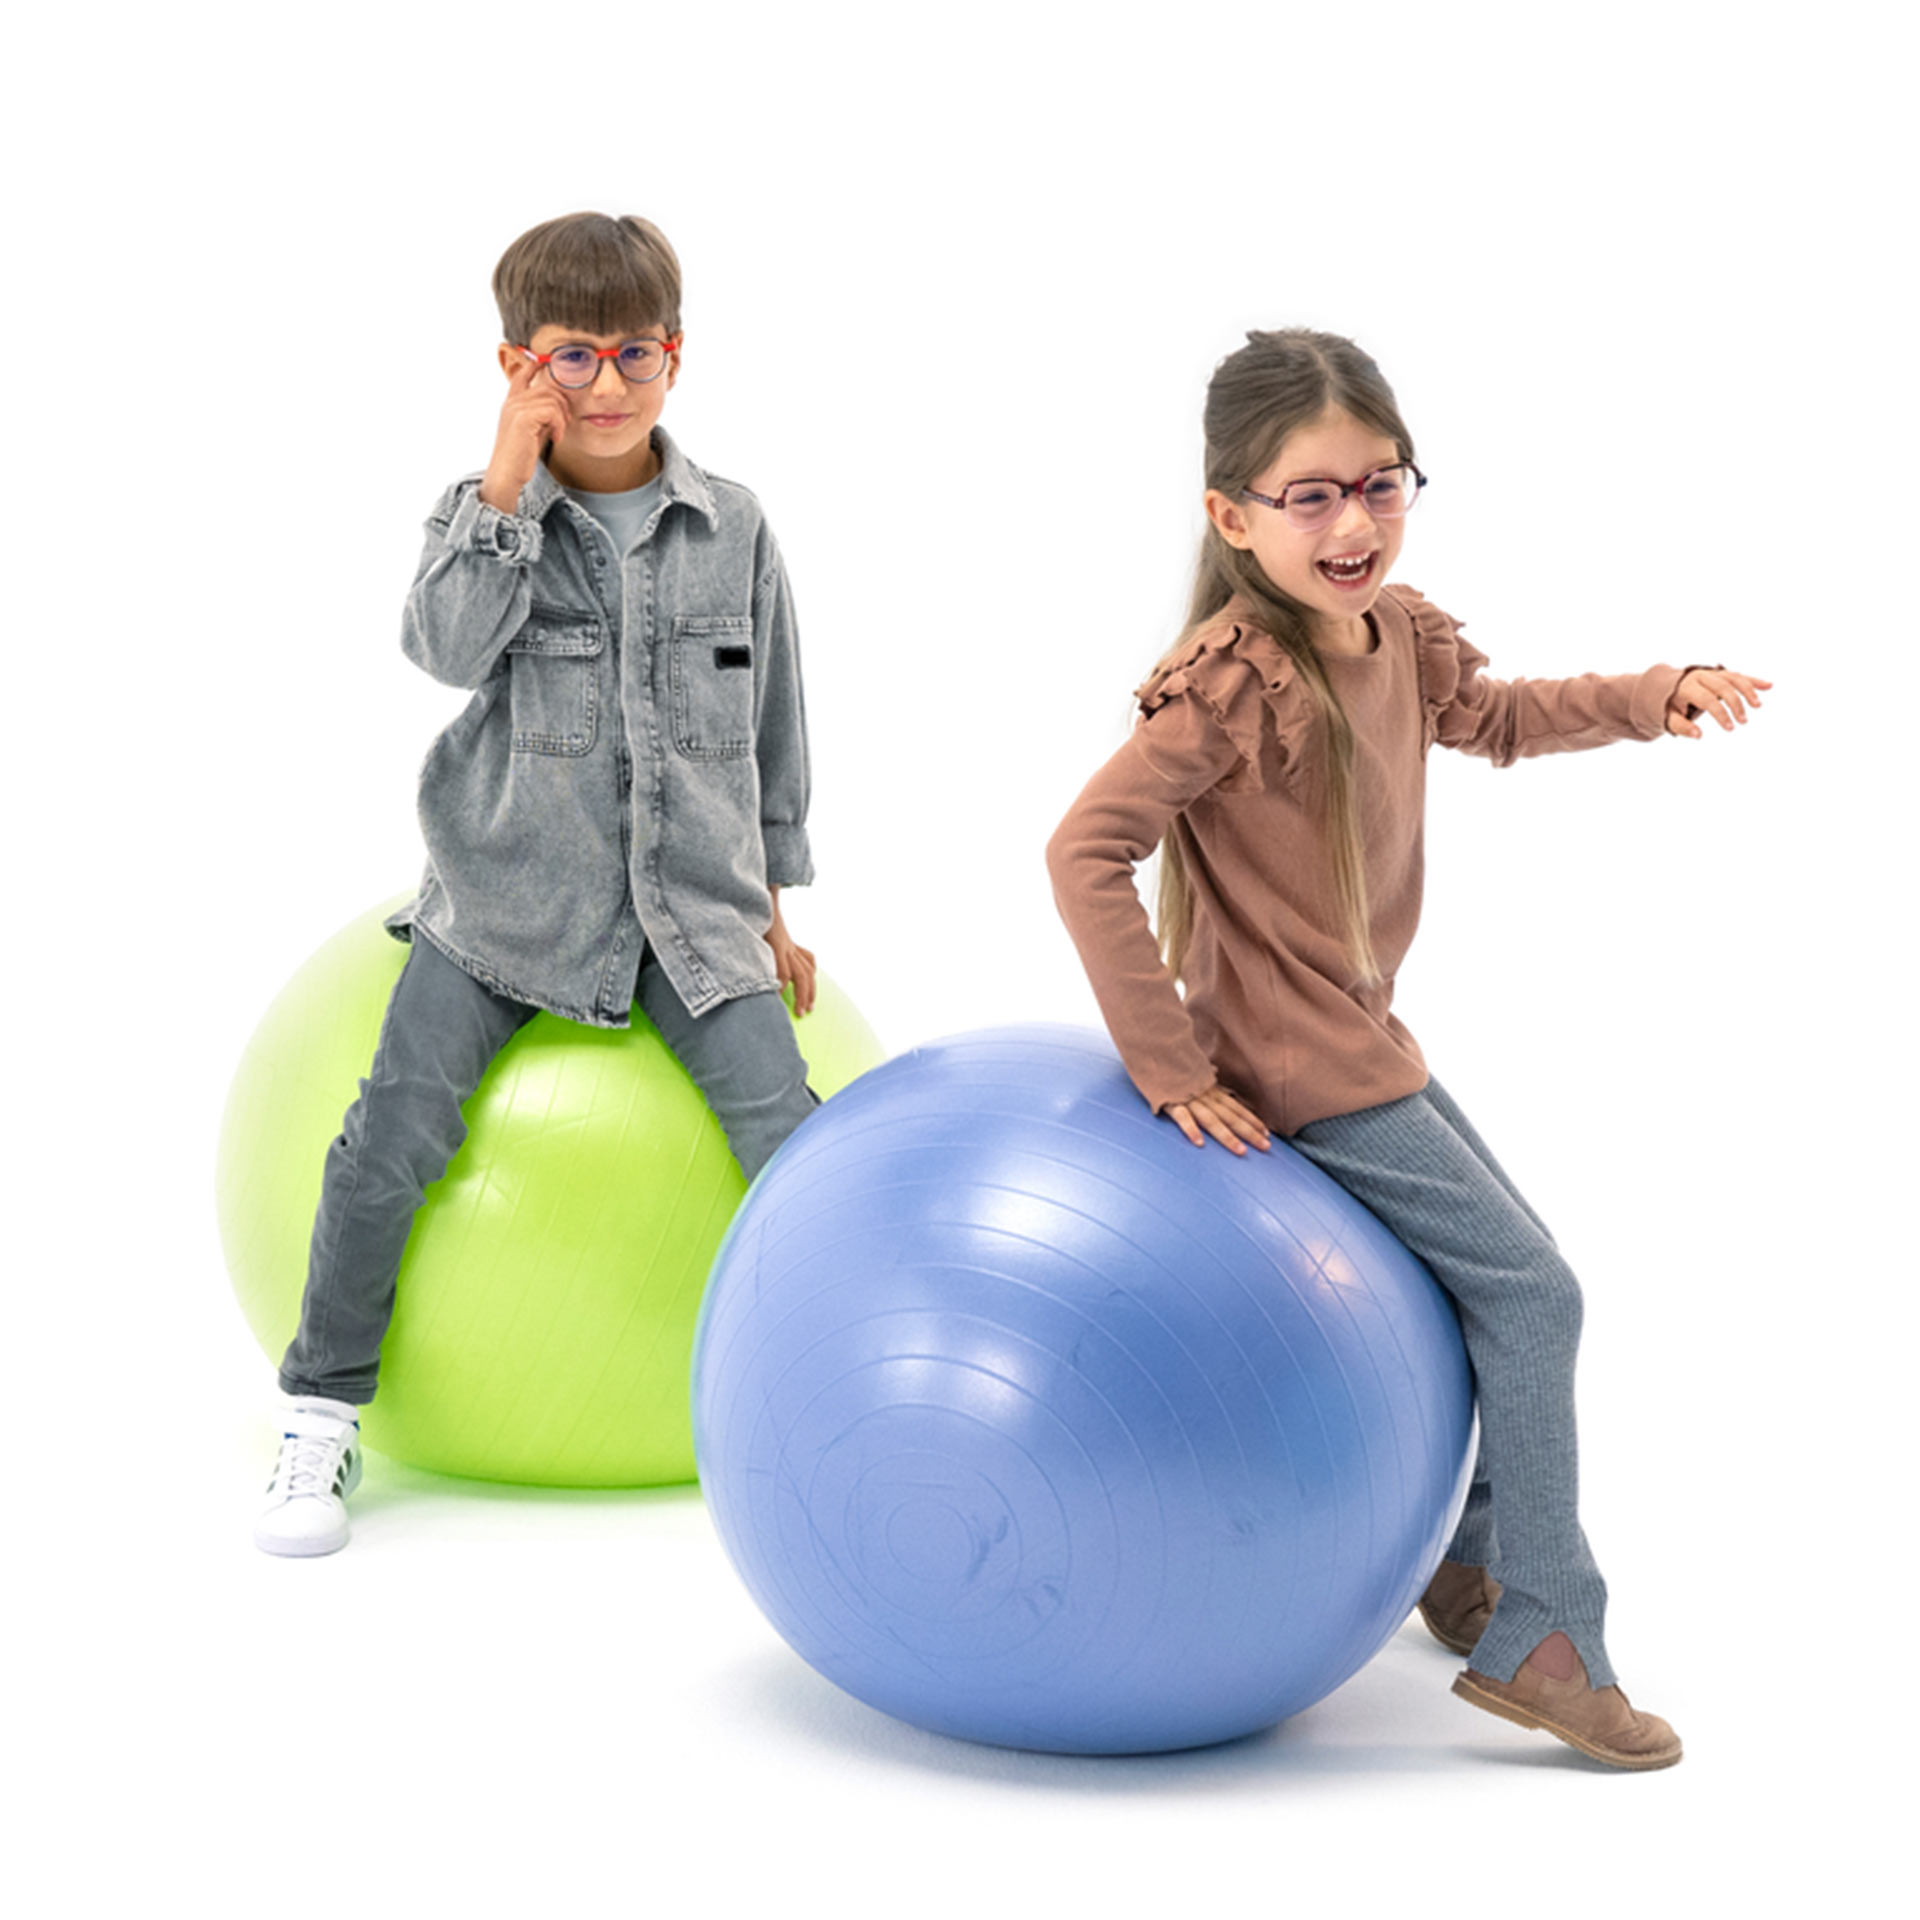 En pojke och en flicka som båda bär glasögon, studsar bollar.